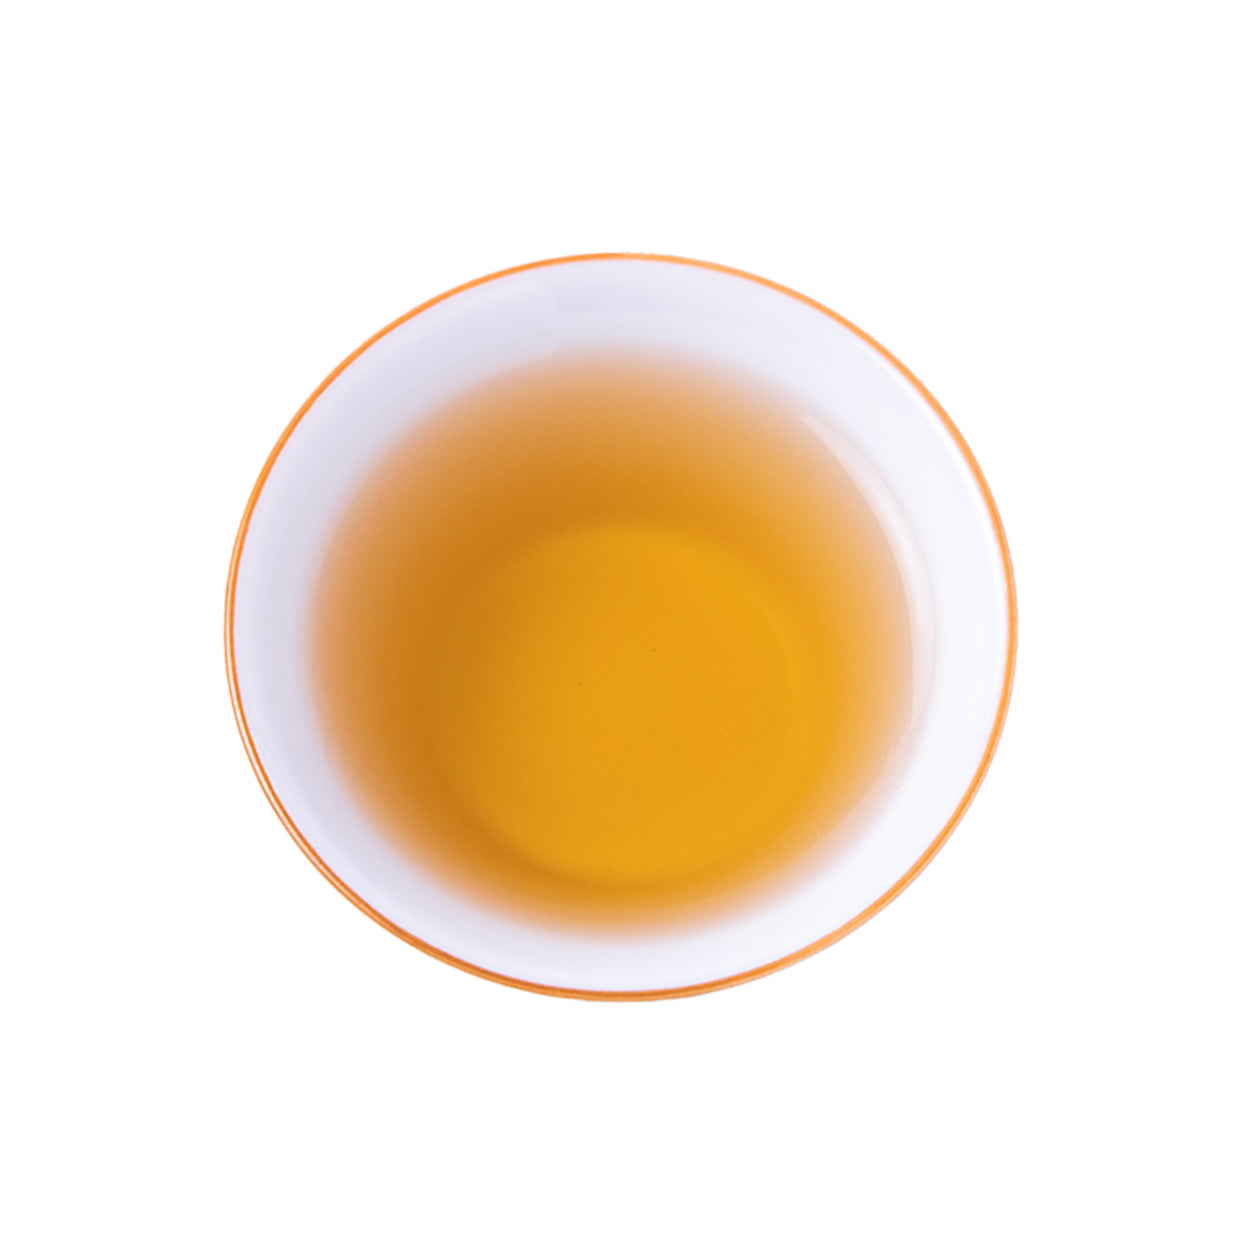 凍頂烏龍茶 - Dongding Oolong Tea